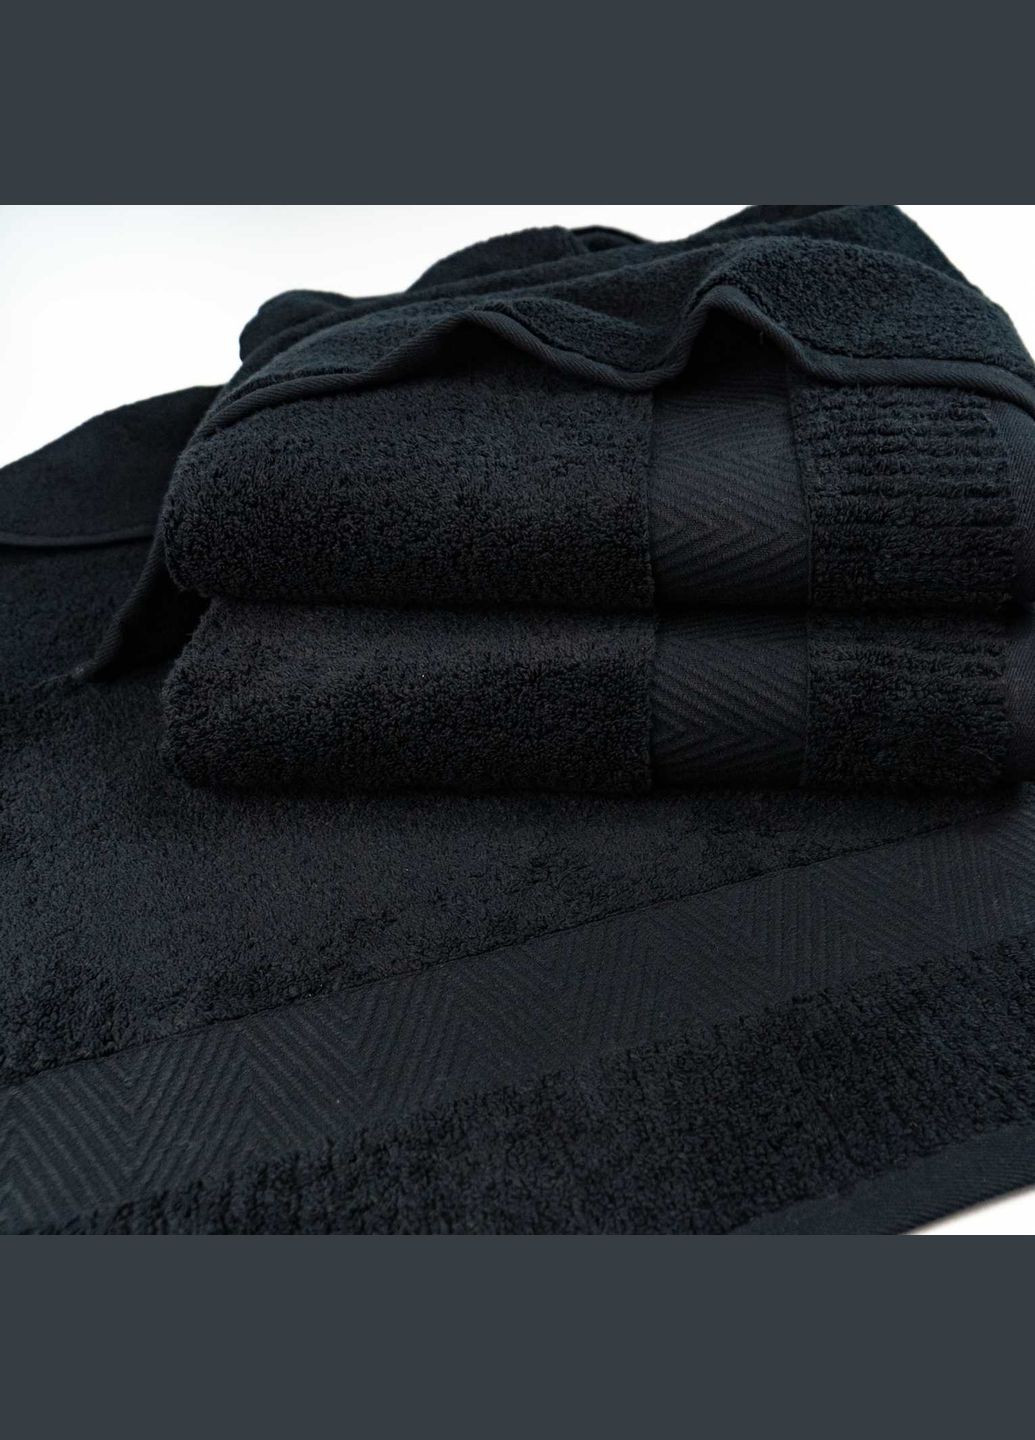 GM Textile банное махровое полотенце 70x140см премиум качества зеро твист бордюр 550г/м2 () черный производство -